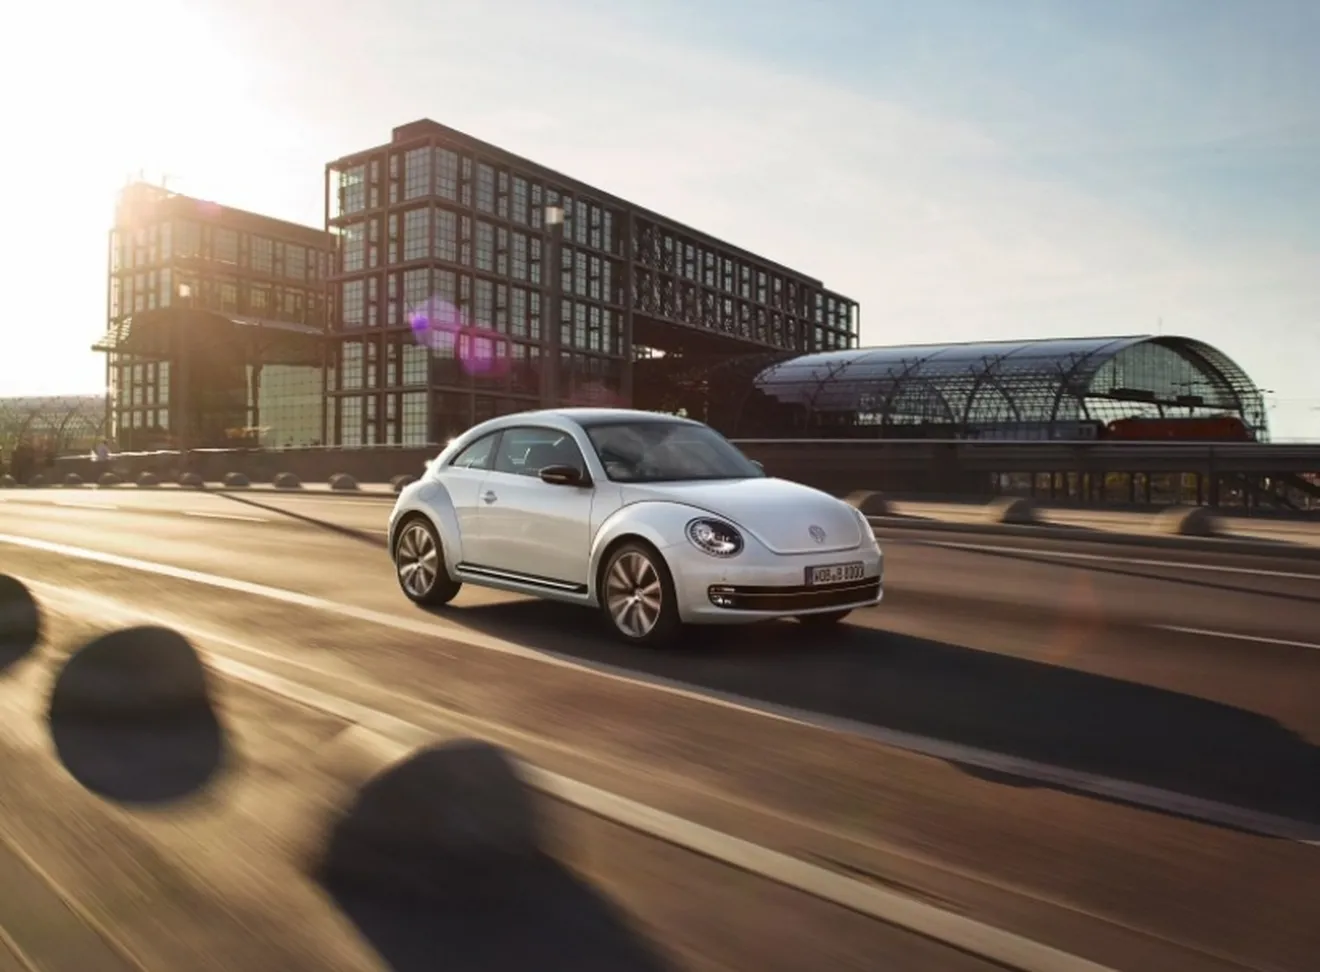 Nueva galería de imágenes del Volkswagen Beetle 2012